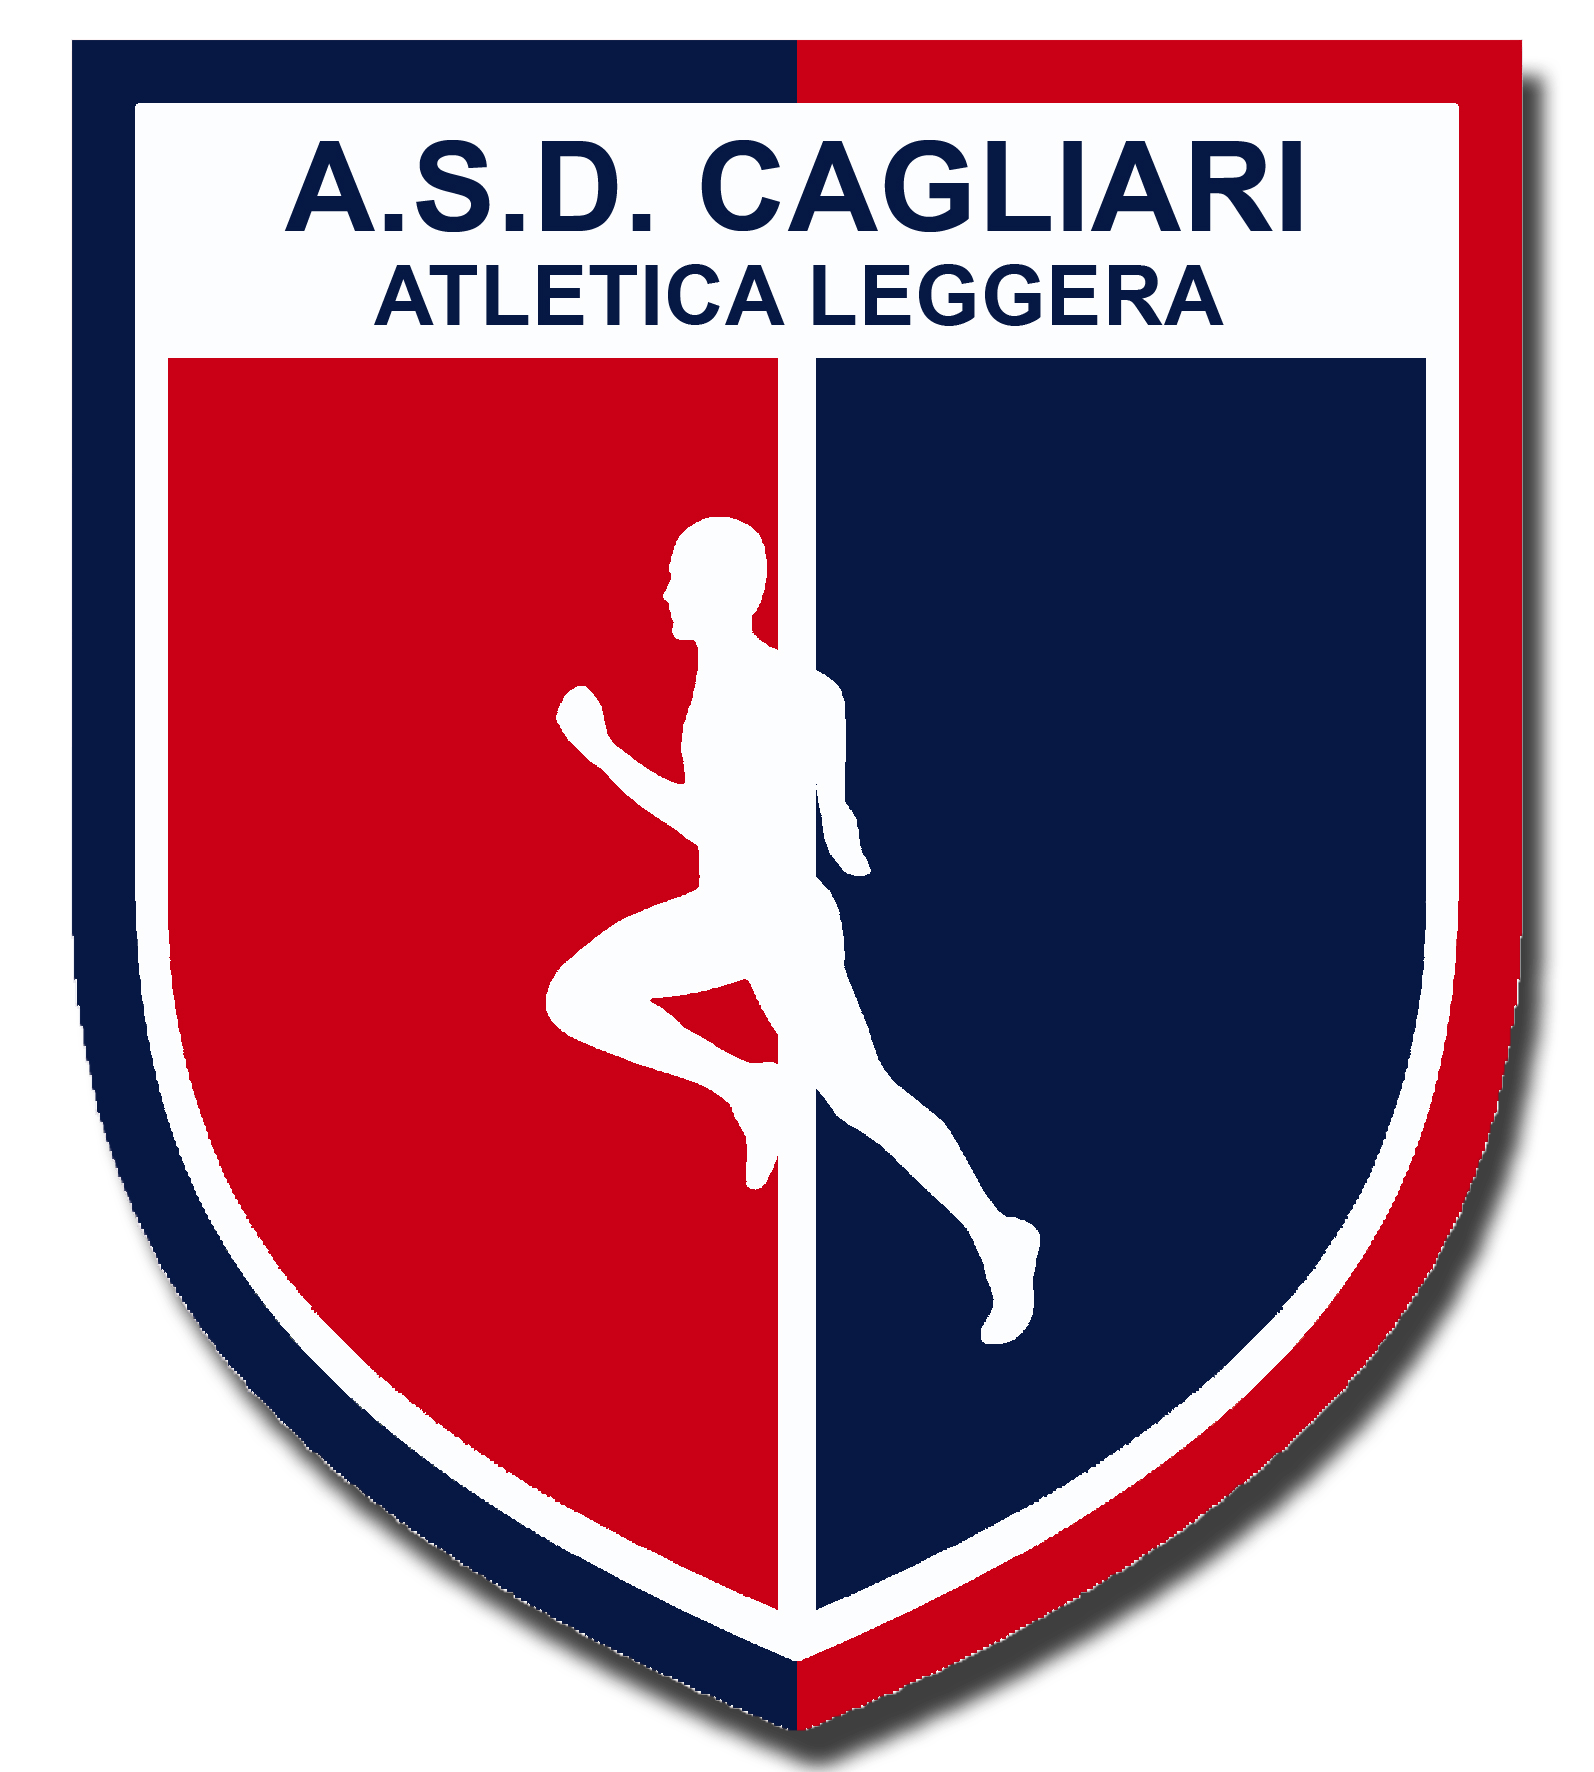 ASD CAGLIARI ATLETICA LEGGERA